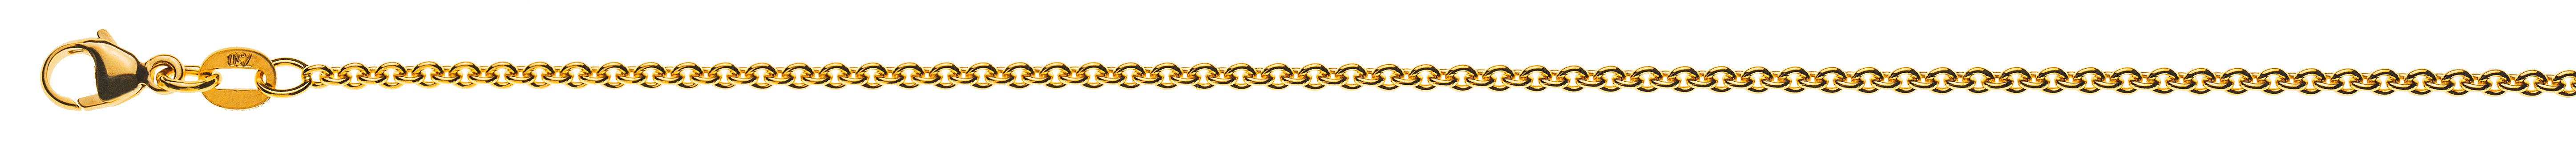 AURONOS Prestige Halskette Gelbgold 18K Rundanker 38cm 1.9mm